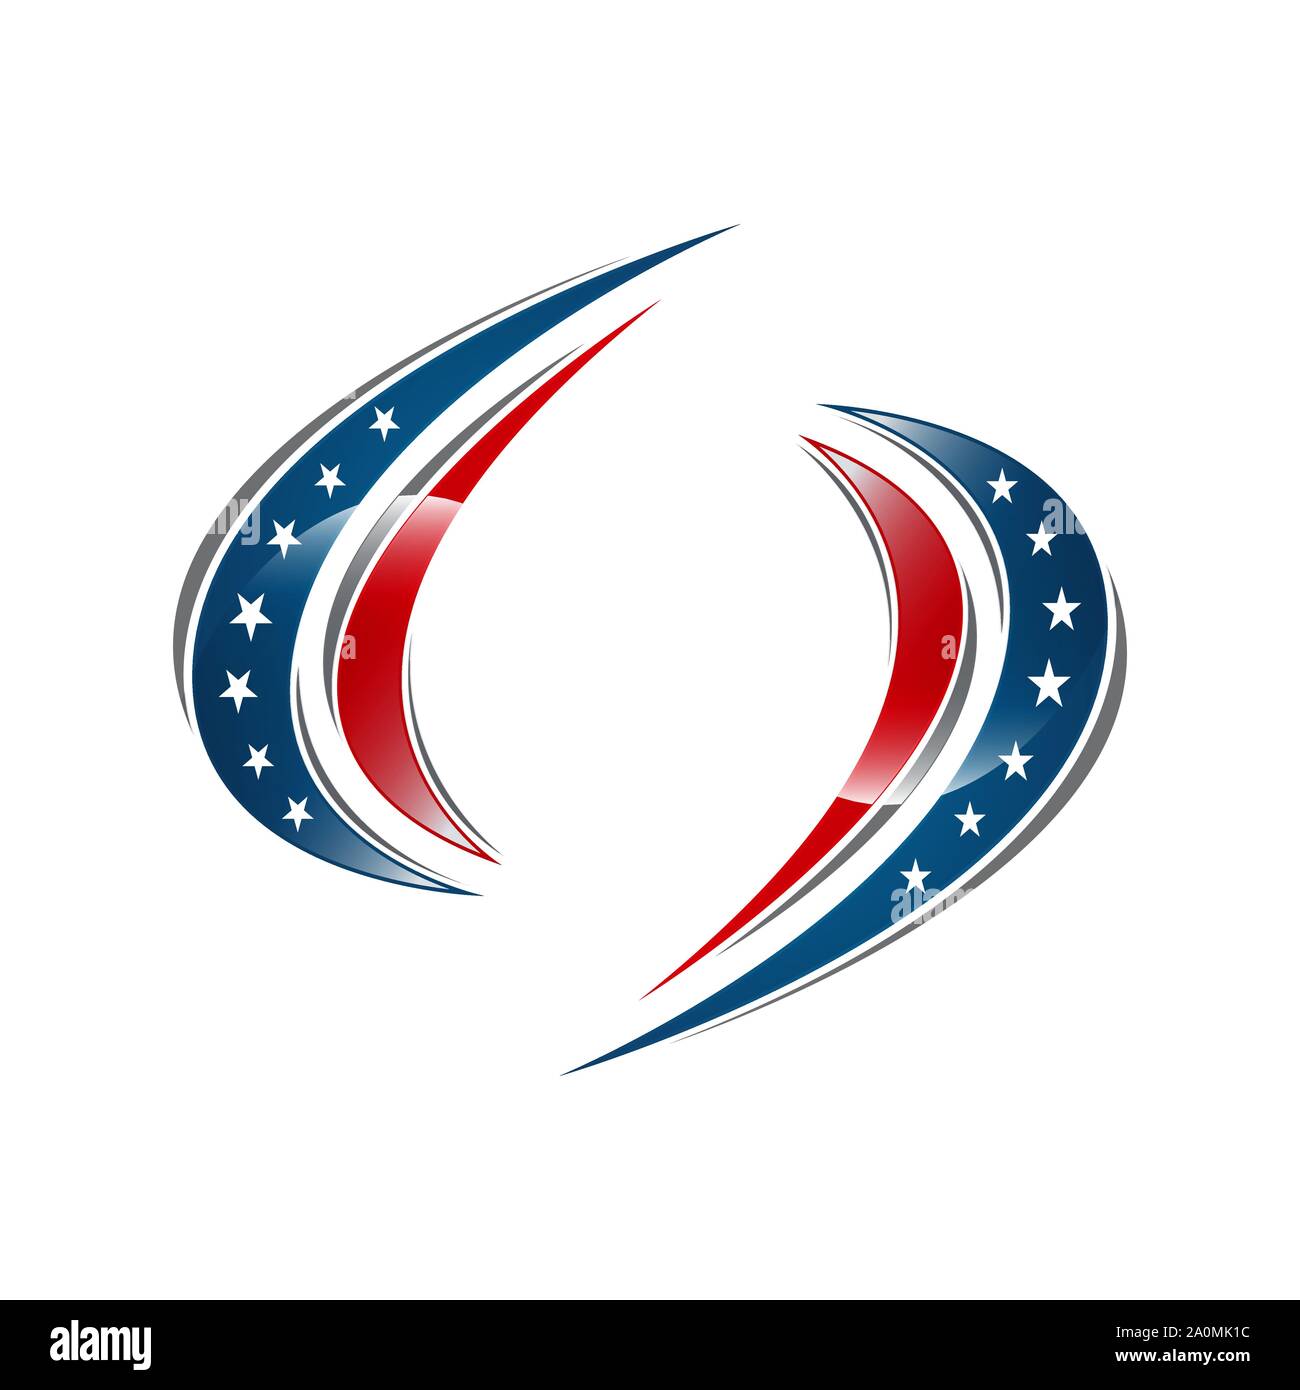 USA american flag logo design elements vector icons Stock Vector